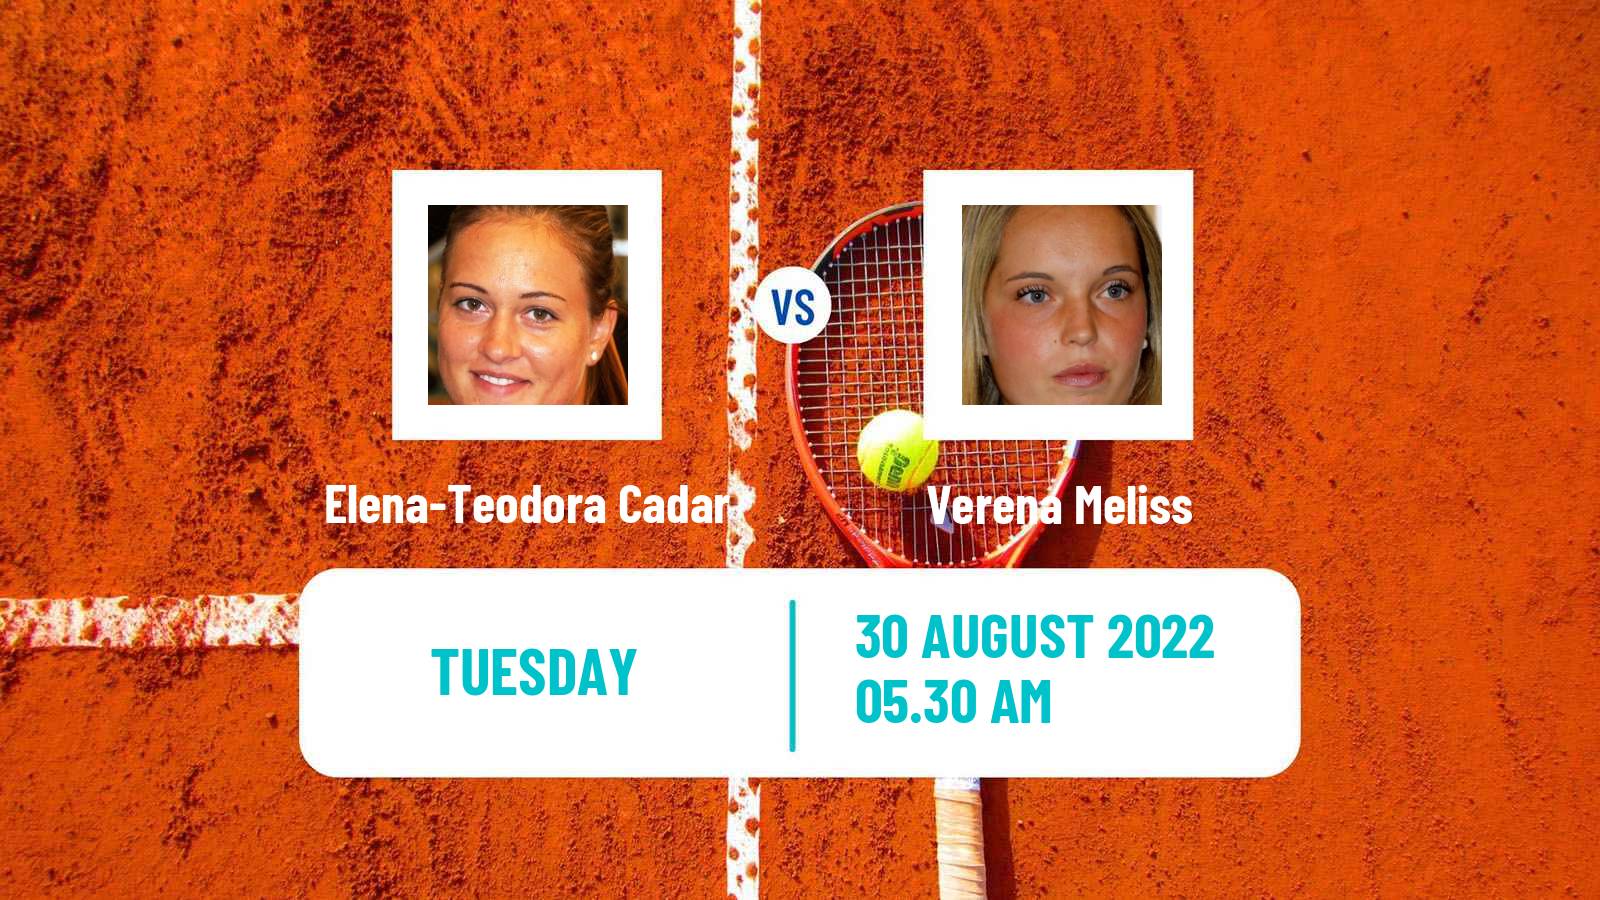 Tennis ITF Tournaments Elena-Teodora Cadar - Verena Meliss